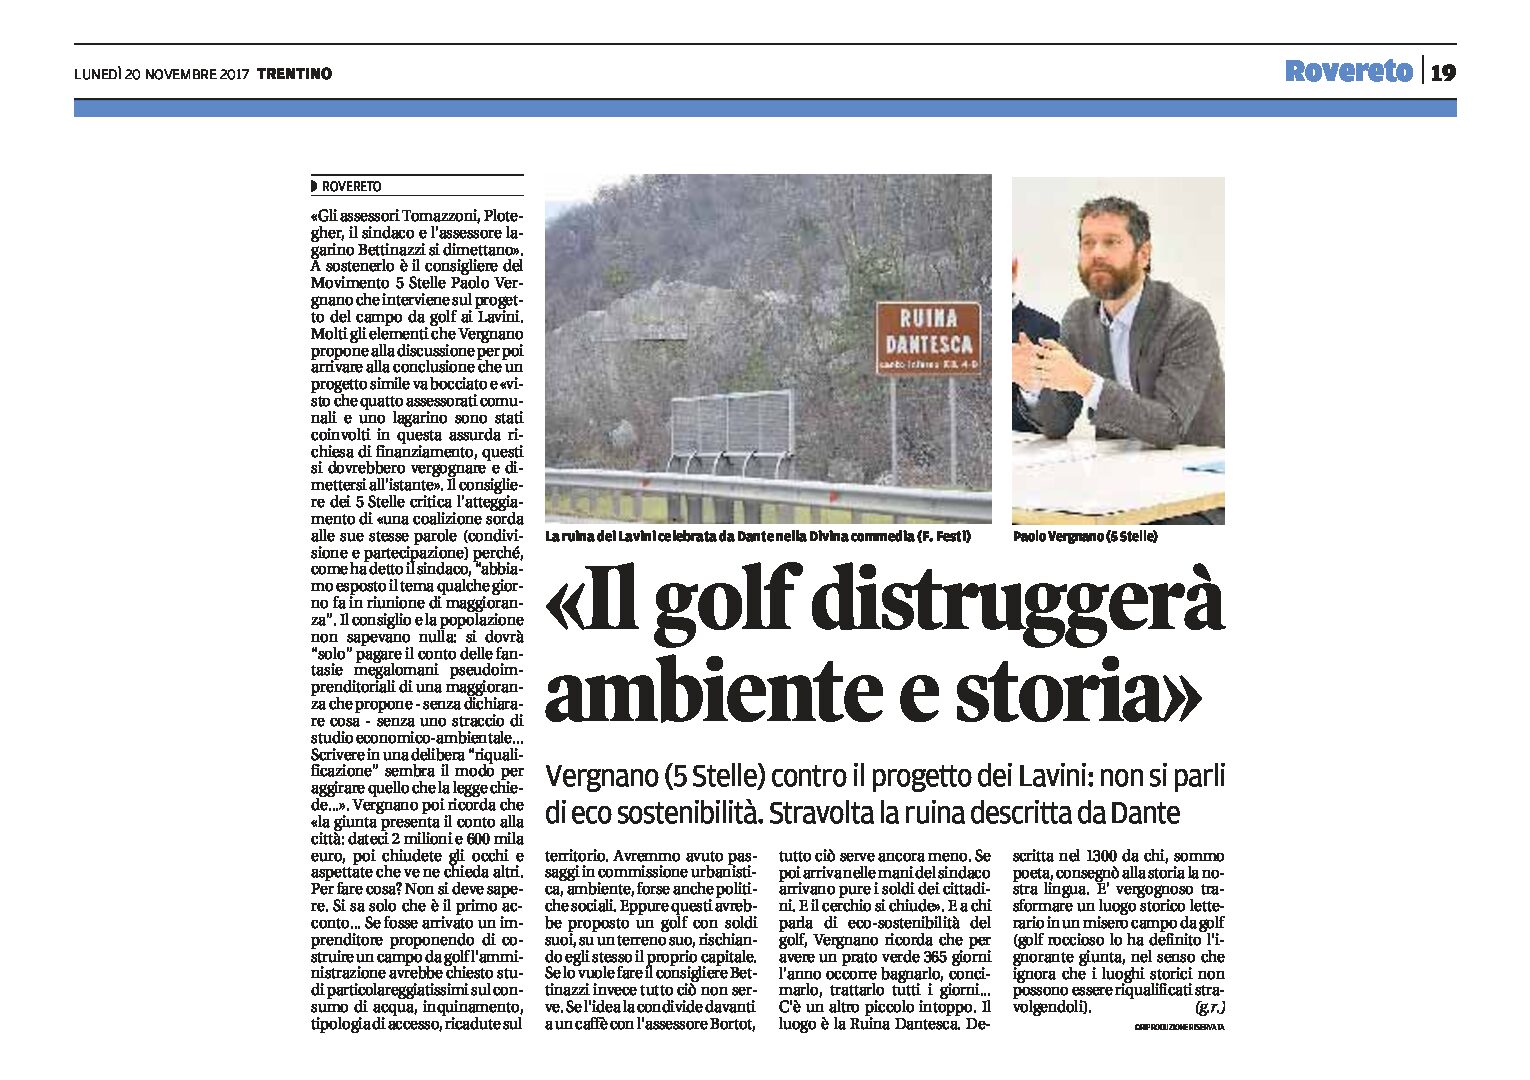 Rovereto, Lavini: il golf distruggerà ambiente e storia. Vergnano contro il progetto